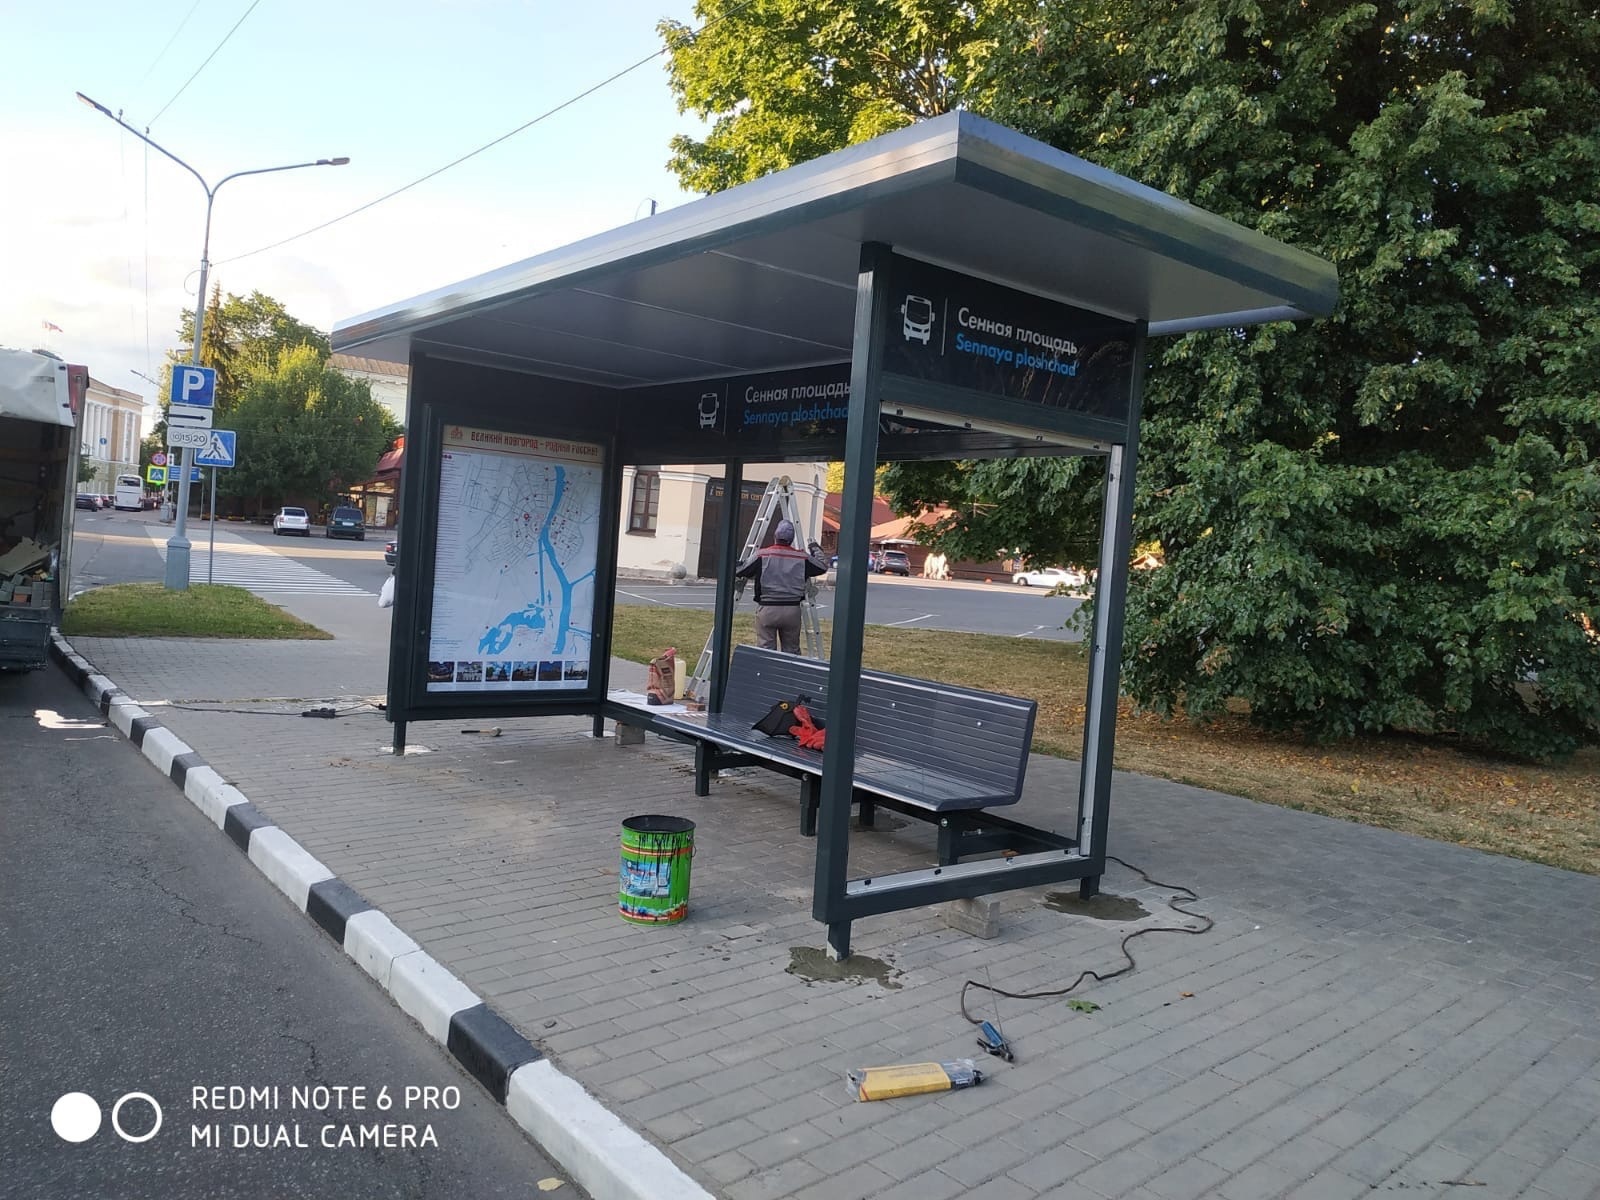 Семь новых "стекляшек", автобусных остановок установили в Великом Новгороде минувшей ночью.